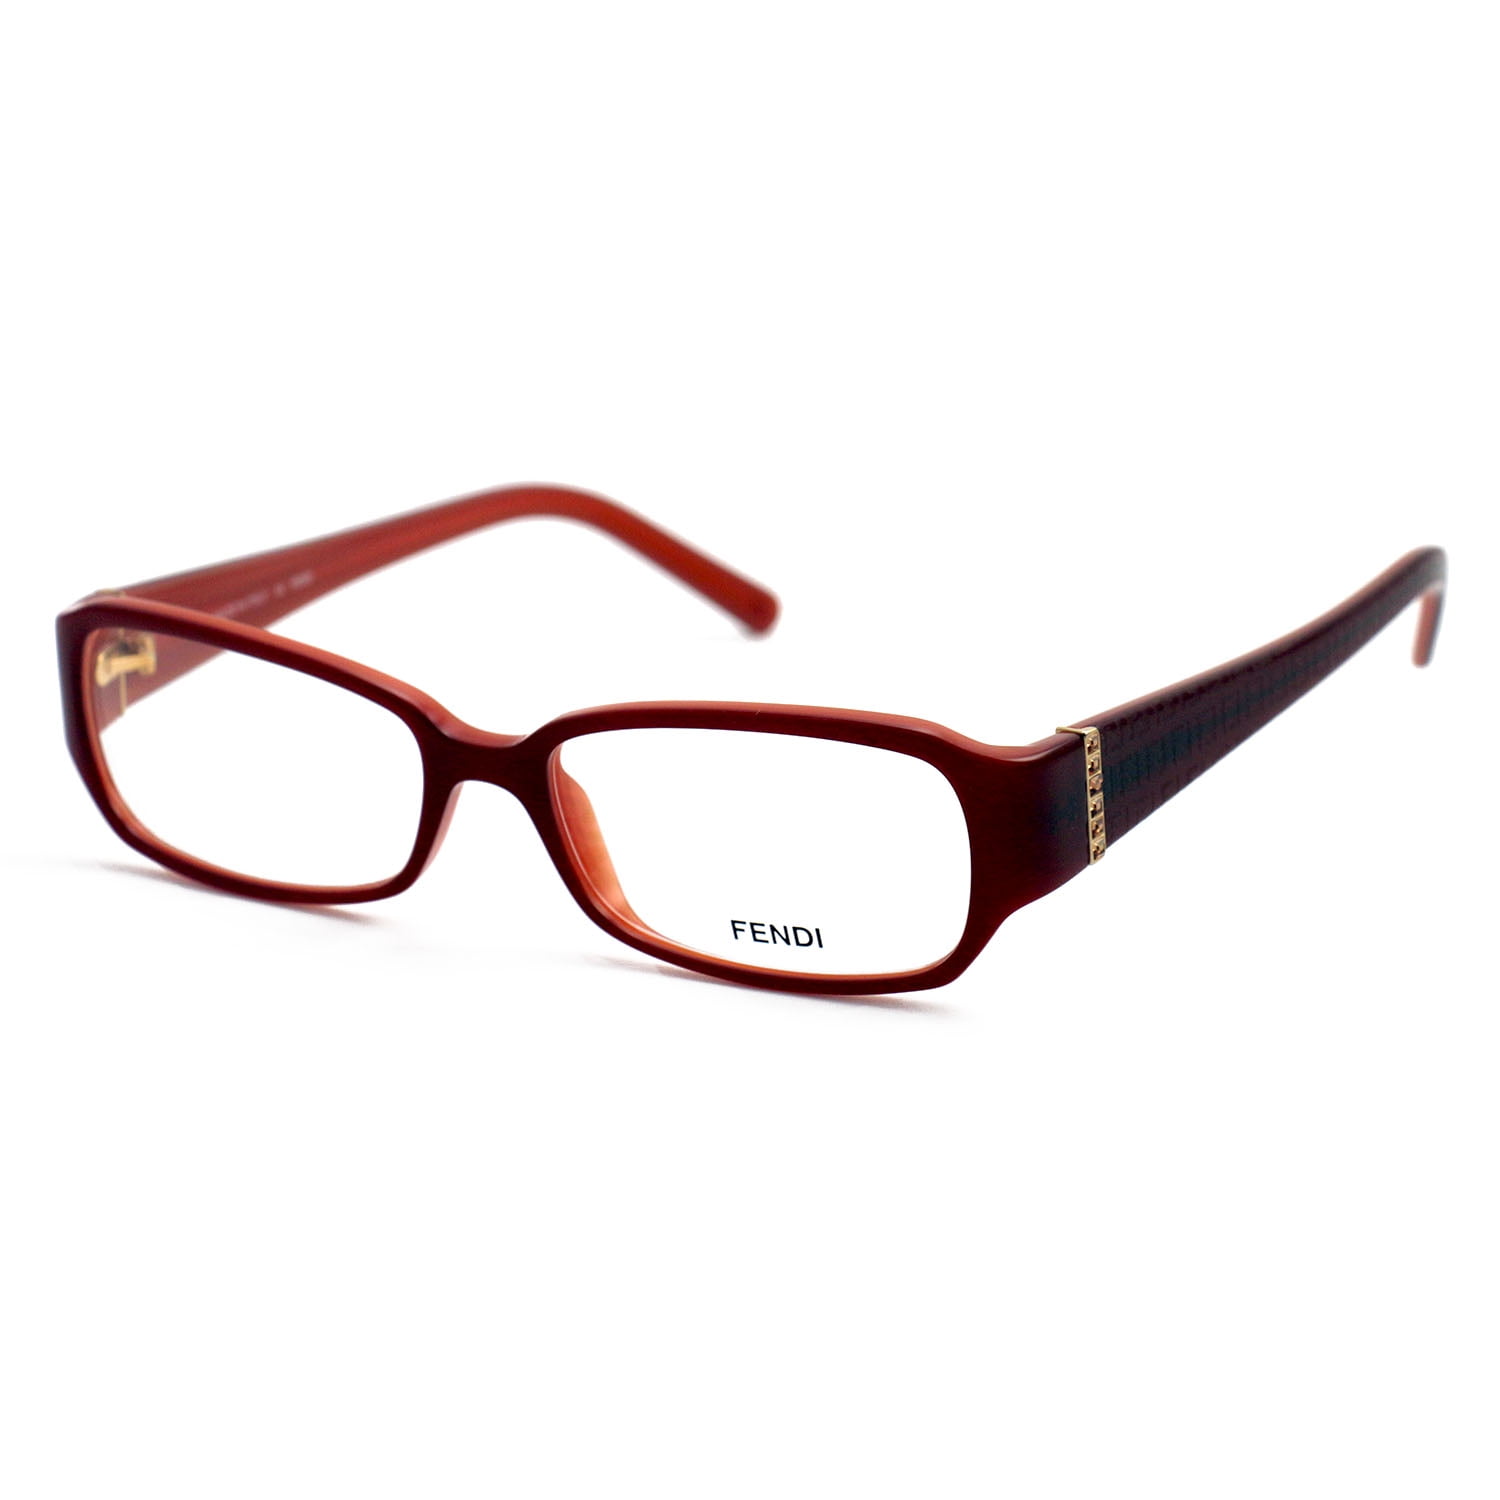 Fendi Eyeglasses Women Red Frames Rectangle 51 16 135 F777R 613 ...